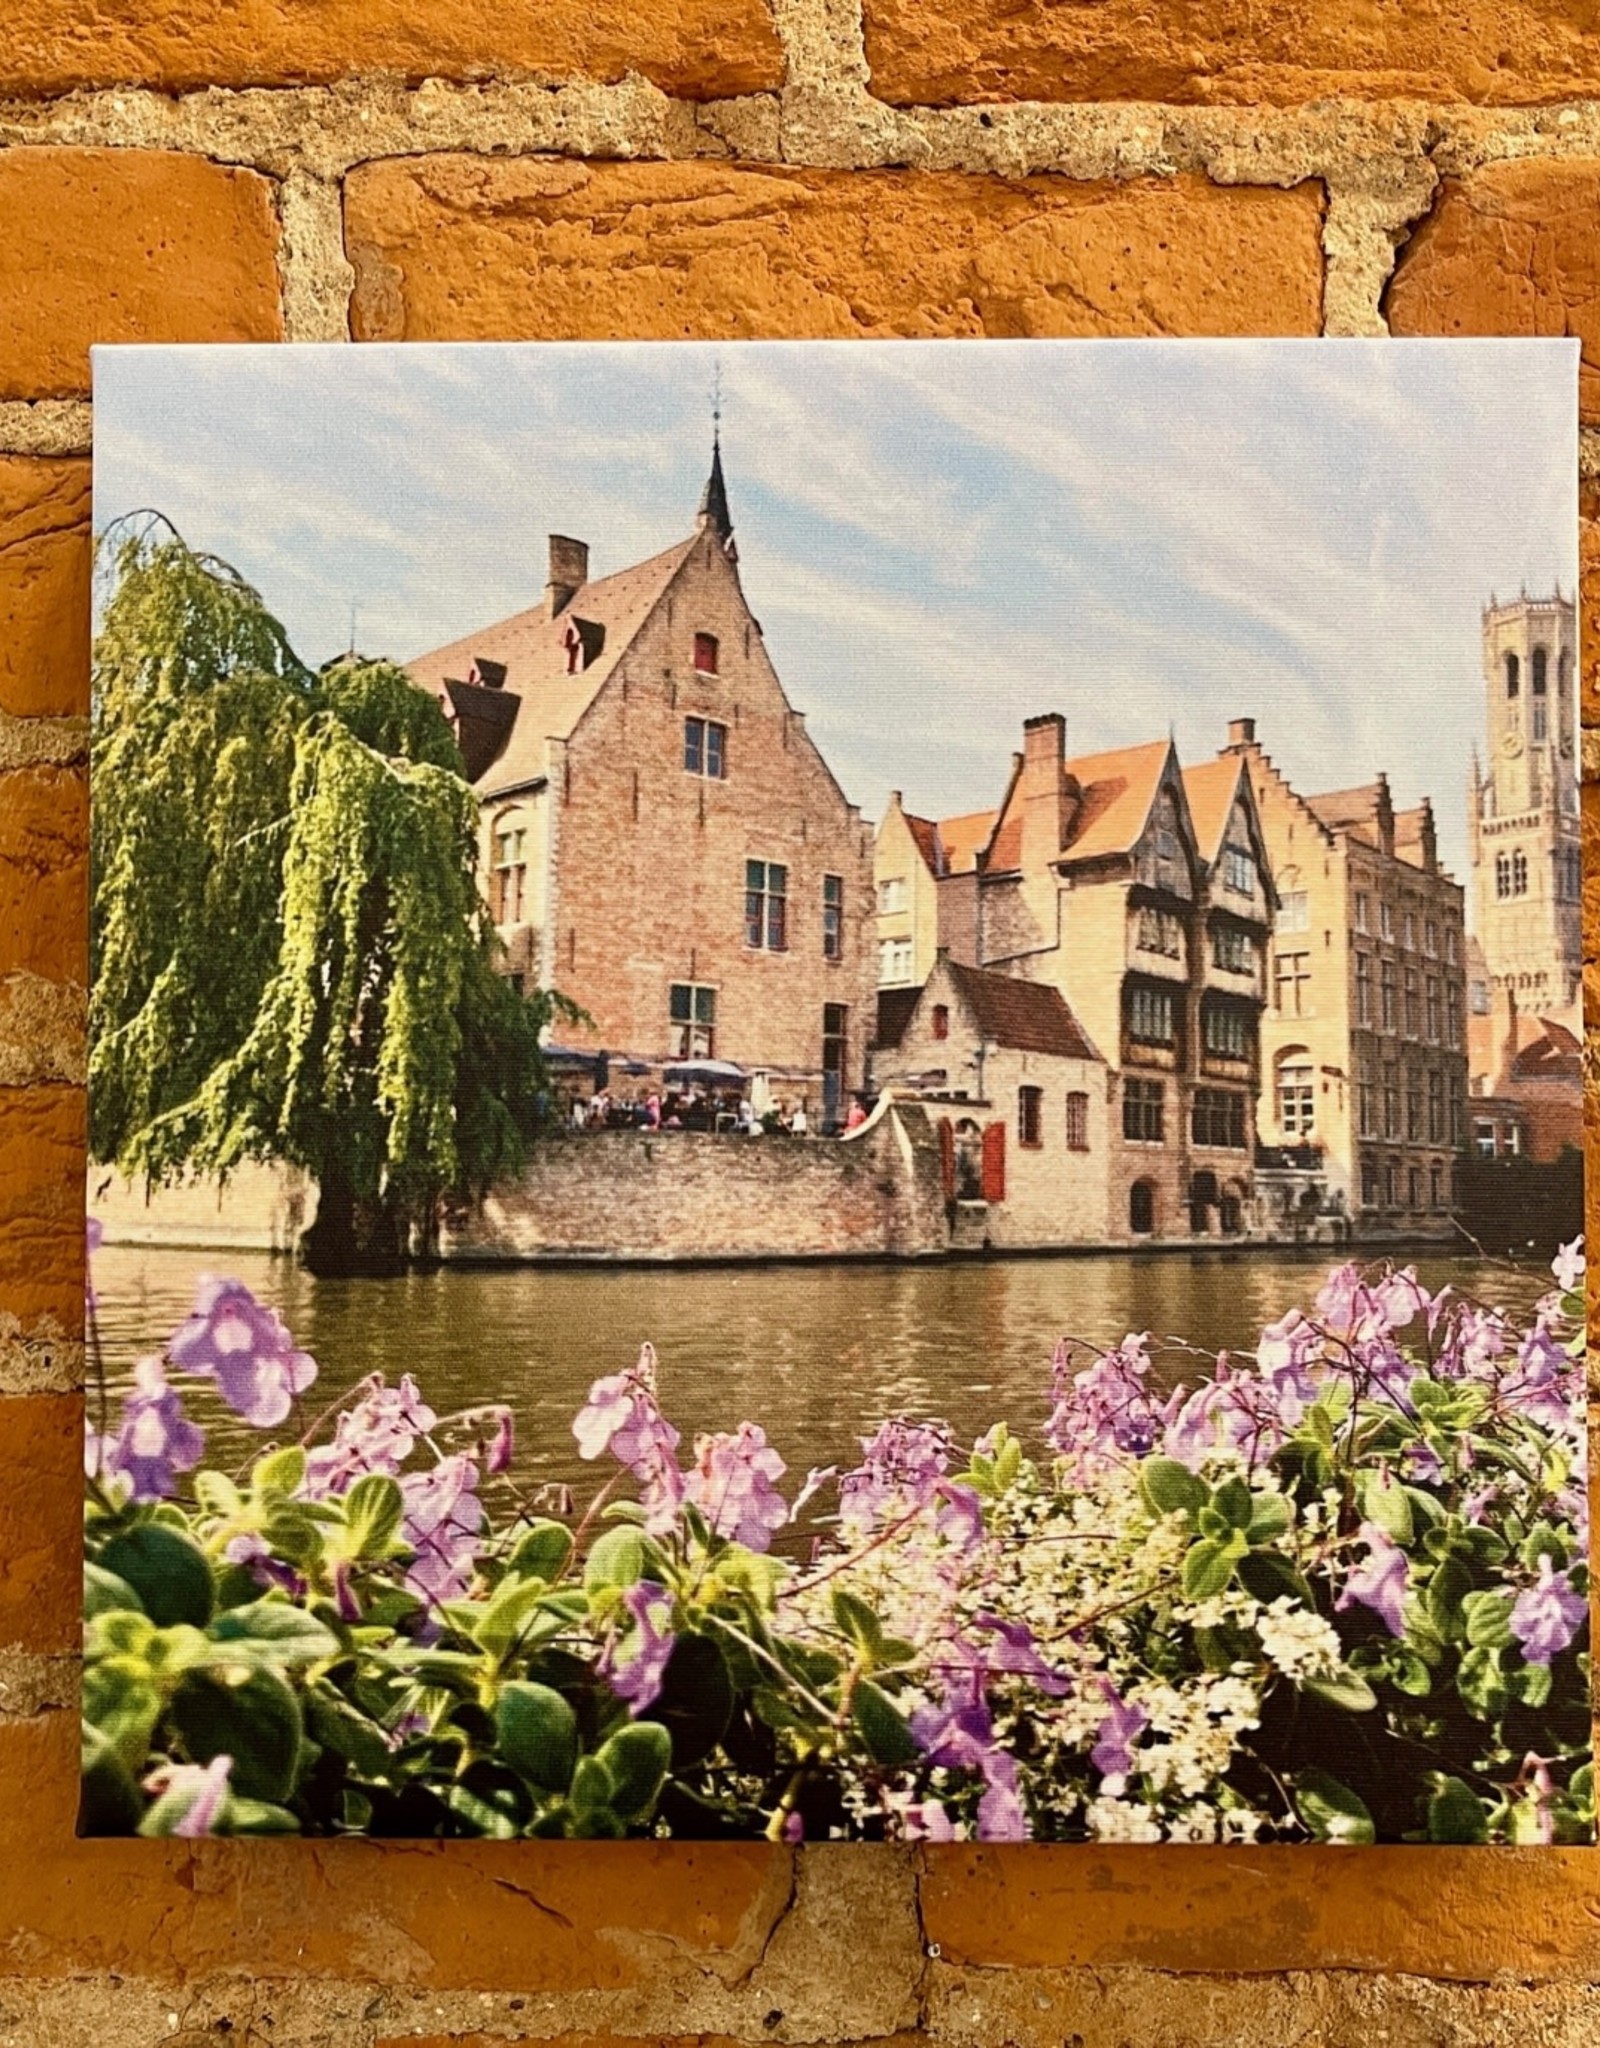 SStraub Bruges Belgium - European Splendor Original Photo 12x12